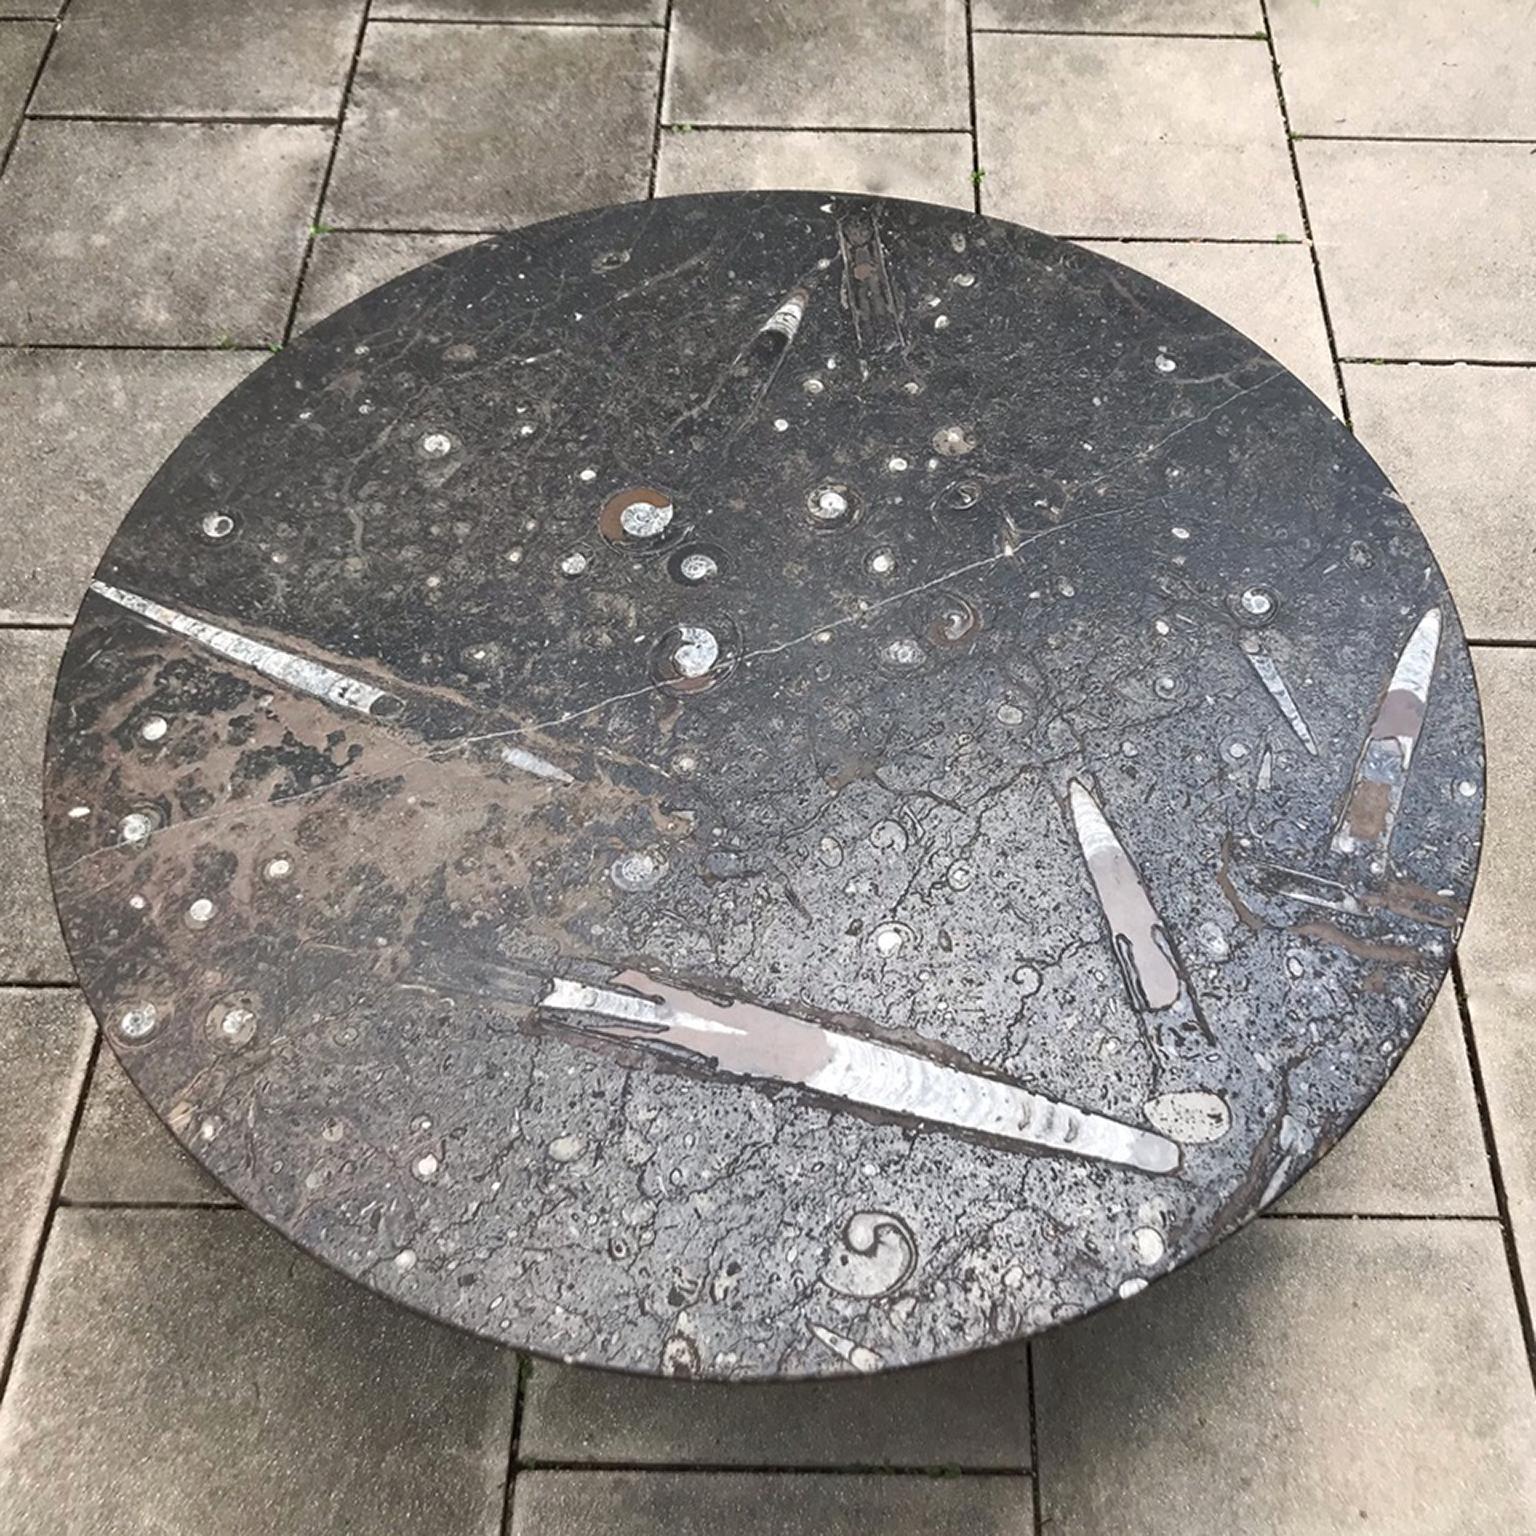 Der berühmte deutsche Künstler Heinz Lilienthal entwarf 1970 diesen auffälligen Couchtisch. Das Besondere an diesem Tisch ist die große runde Steinplatte mit Ammoniten- und Fossilienintarsien. So entsteht ein einzigartiges Erscheinungsbild, das den